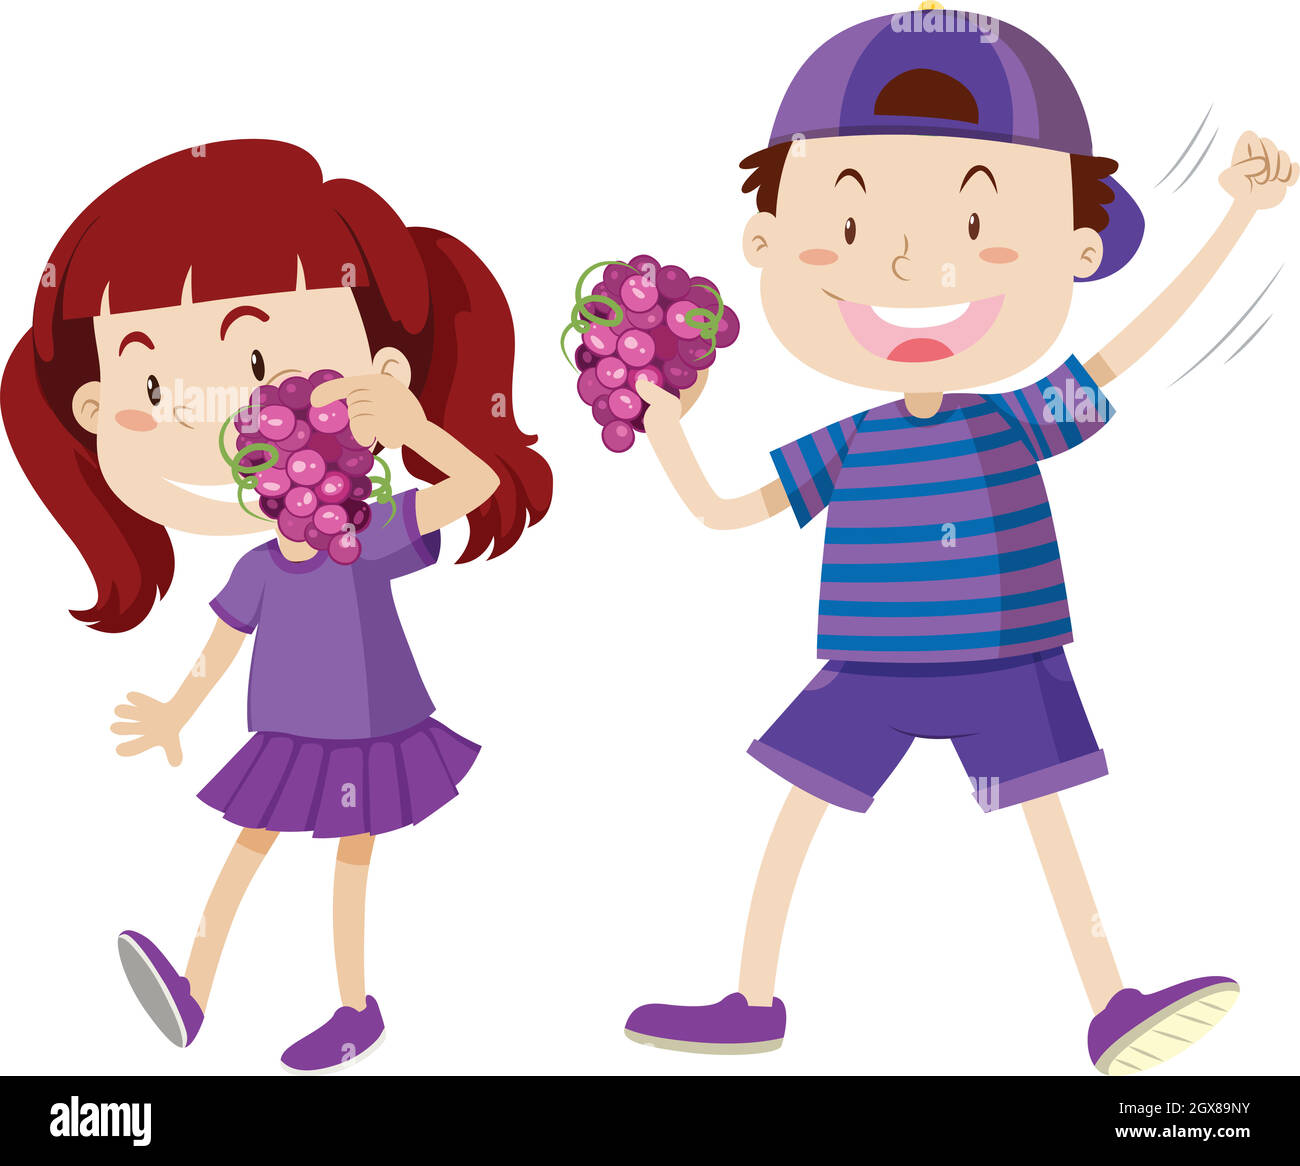 Garçon et fille en violet tenant des raisins Illustration de Vecteur